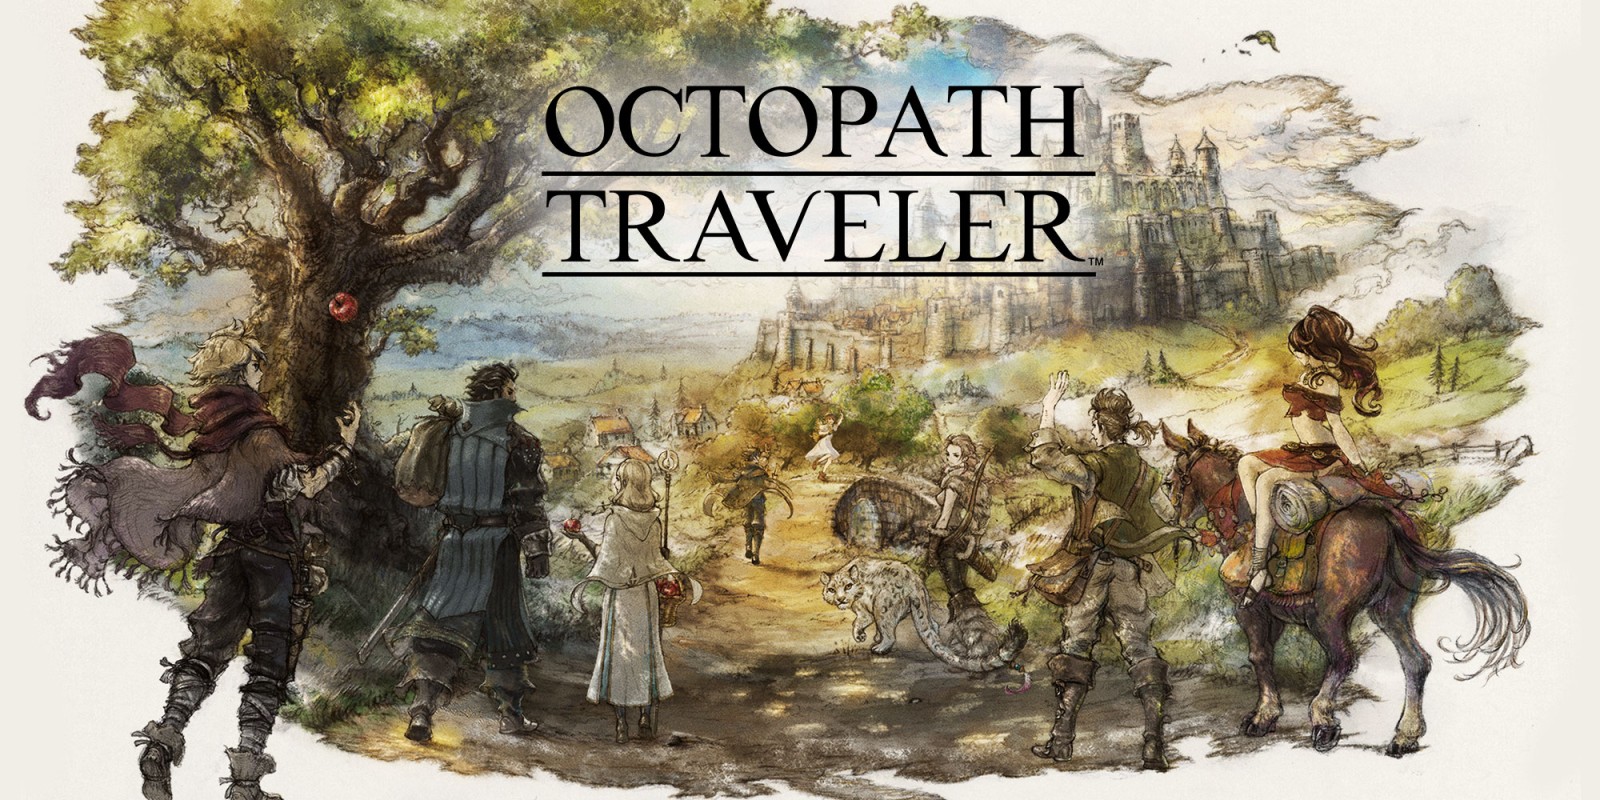 Nieuws - Octopath Traveler E3 trailer 